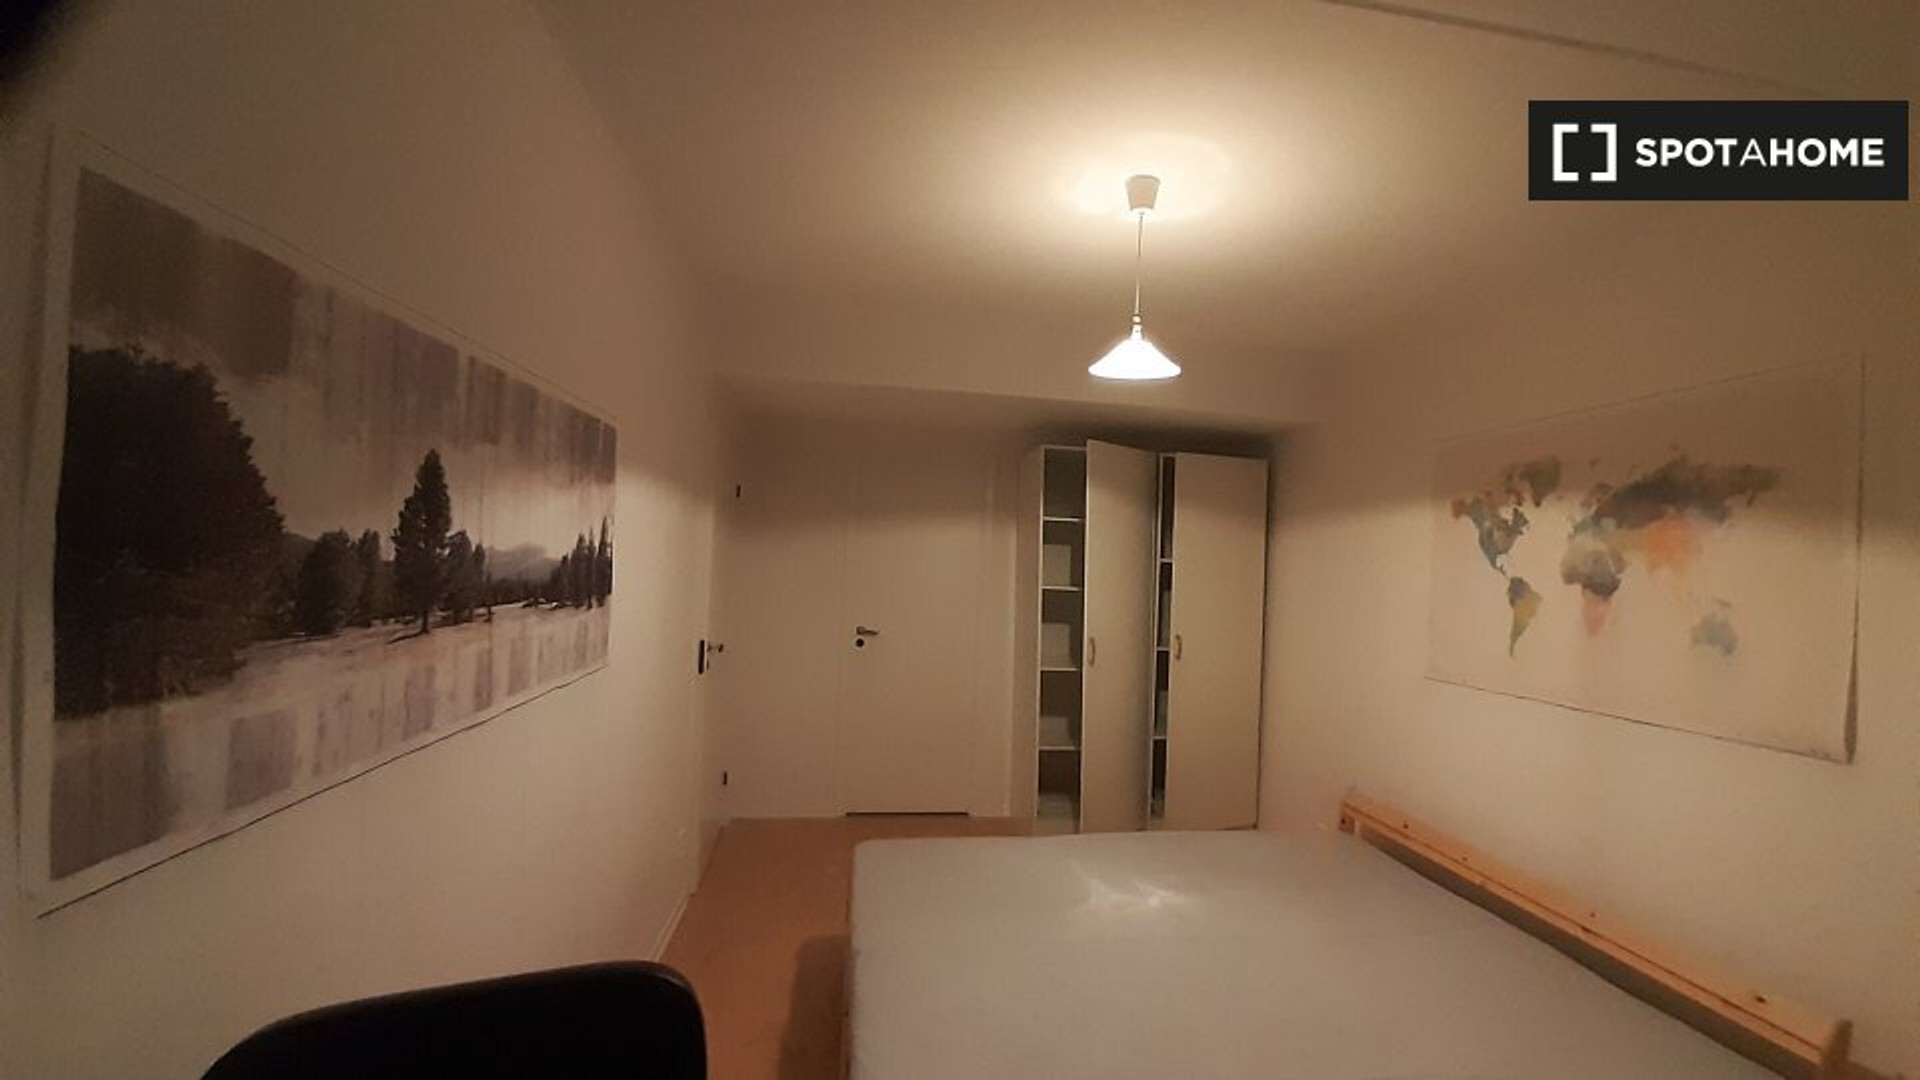 Monatliche Vermietung von Zimmern in Stockholm